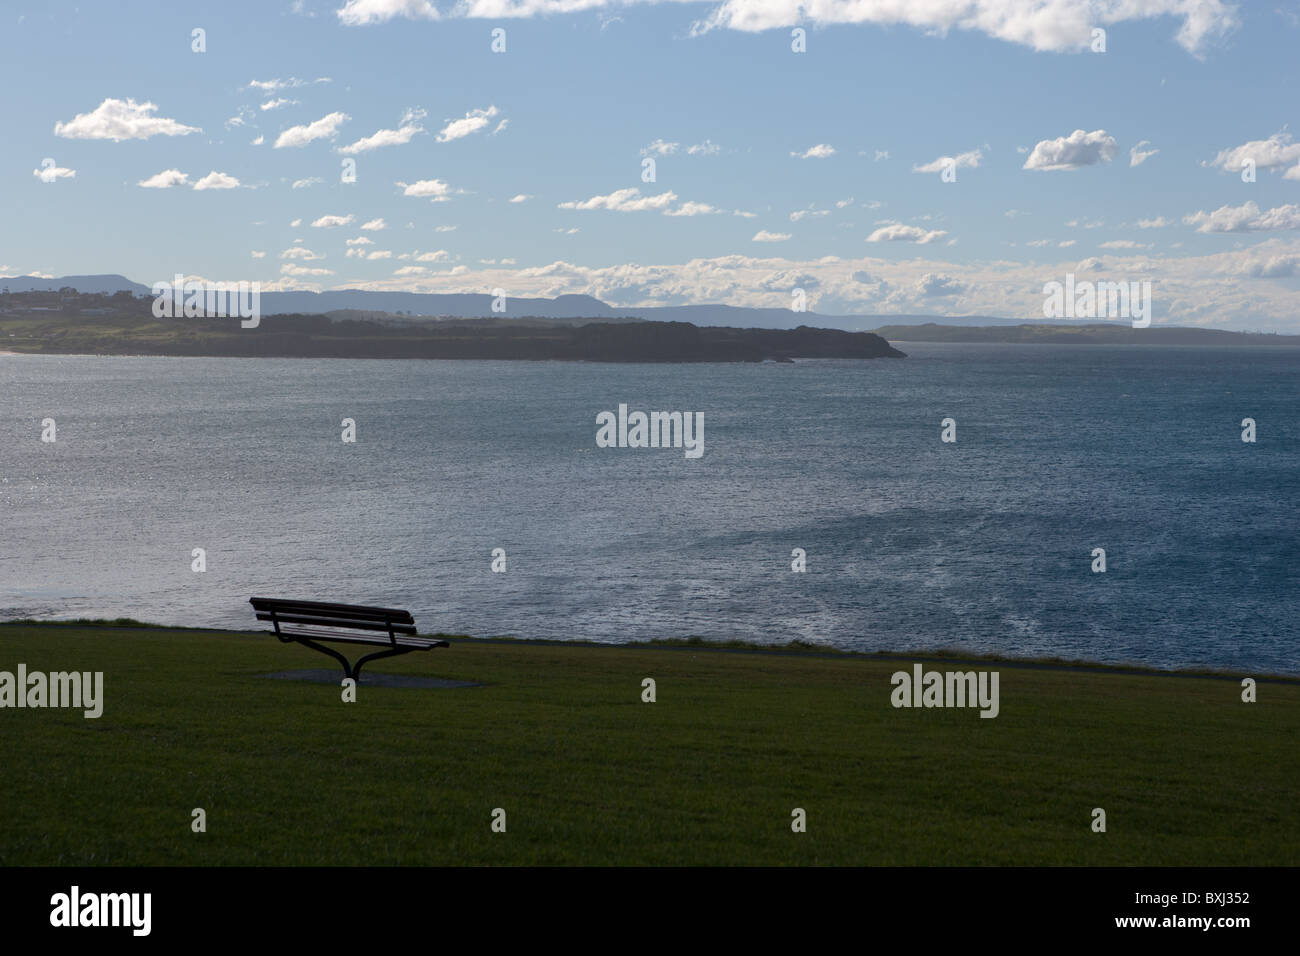 Banc vide singulier surplombant Ocean symbolisant la liberté / seul / isolement. Campbelltown NSW, Australie. Banque D'Images